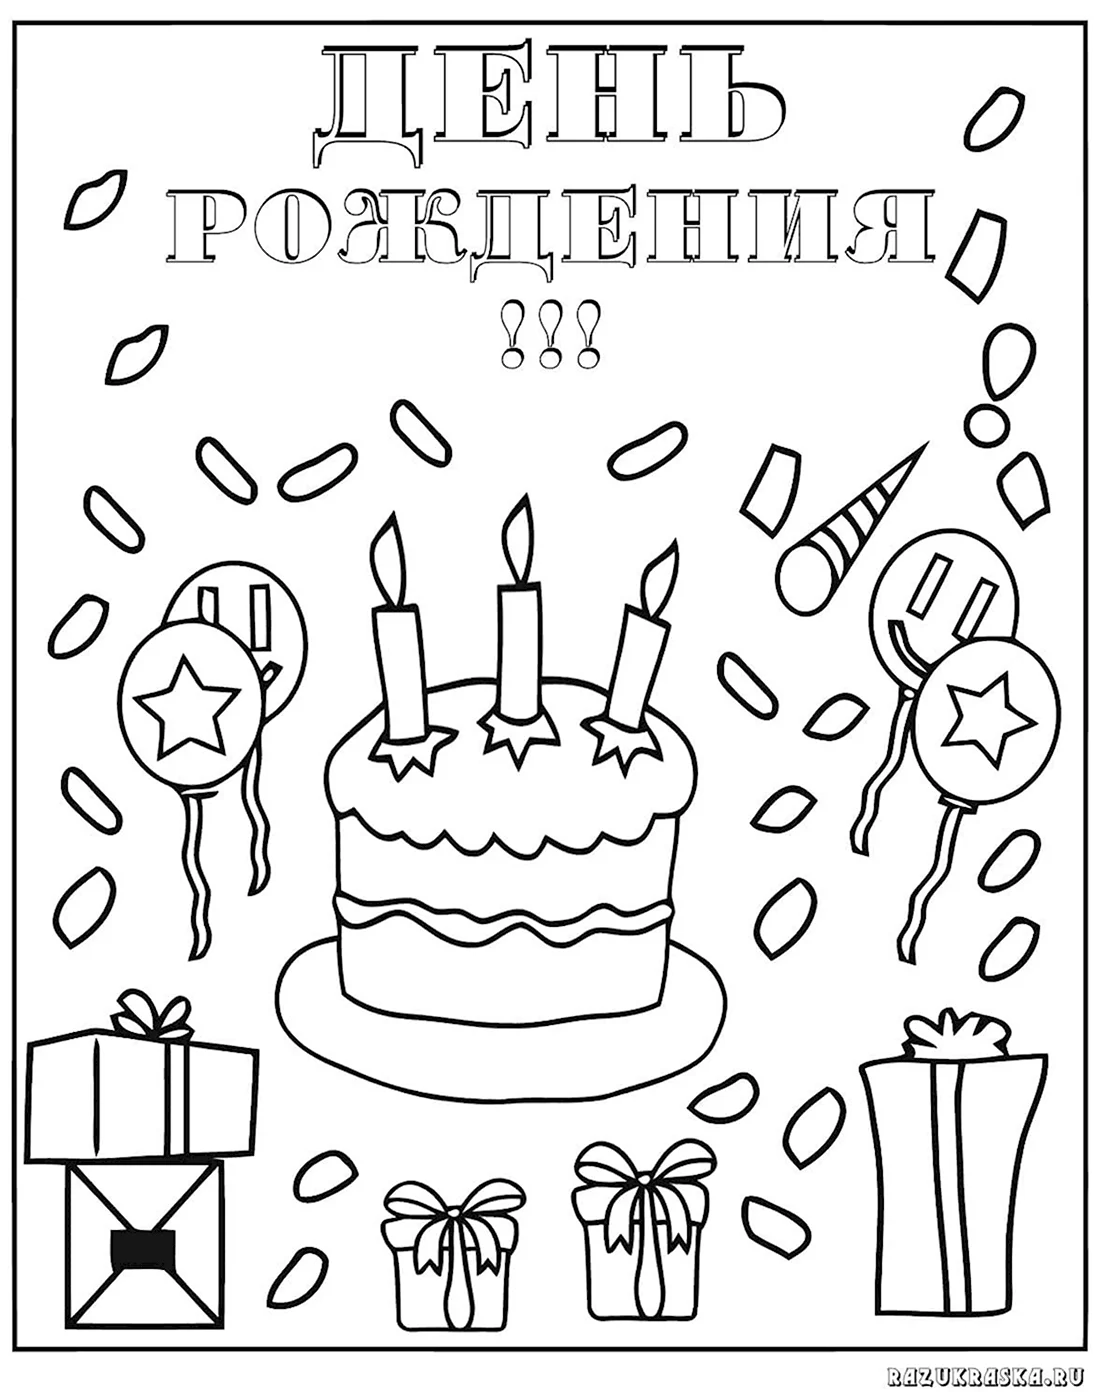 Рисунок на день рождения. Открытка с днем рождения